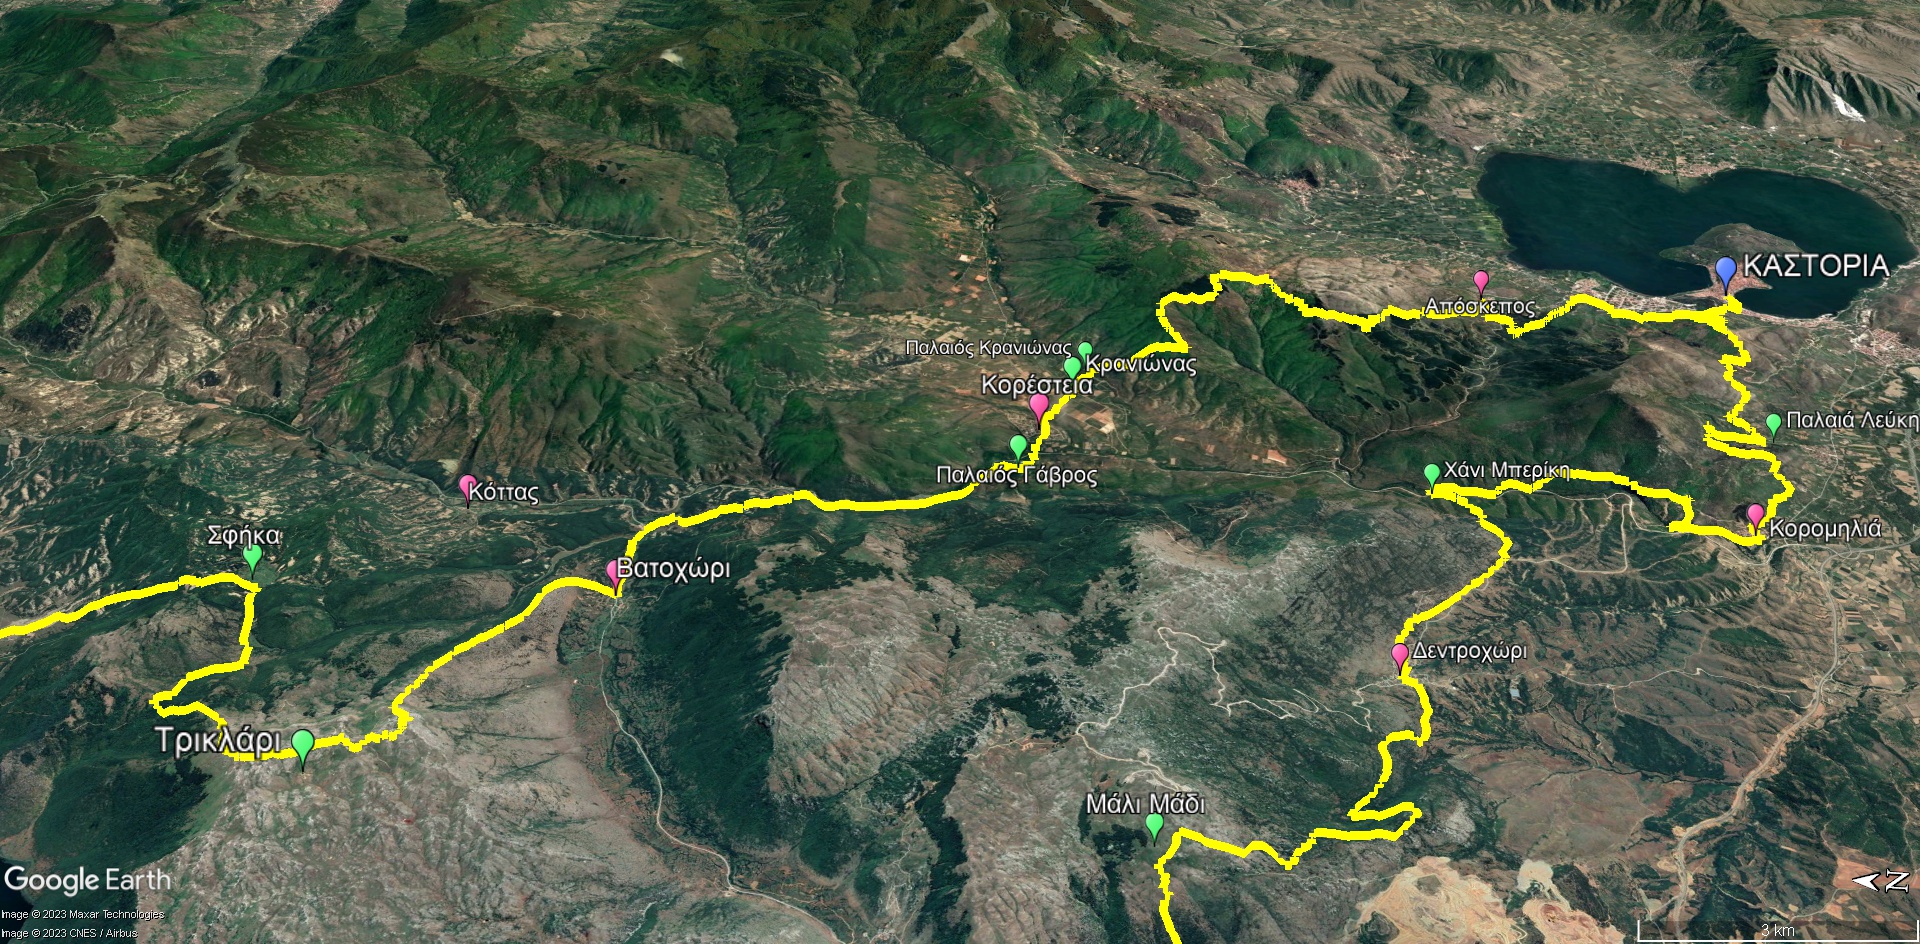 Μεγάλη Διαδρομή Γράμμος-Πρέσπα: Το σκέλος από την Καστοριά στα Κορέστεια και το Τρικλάρι